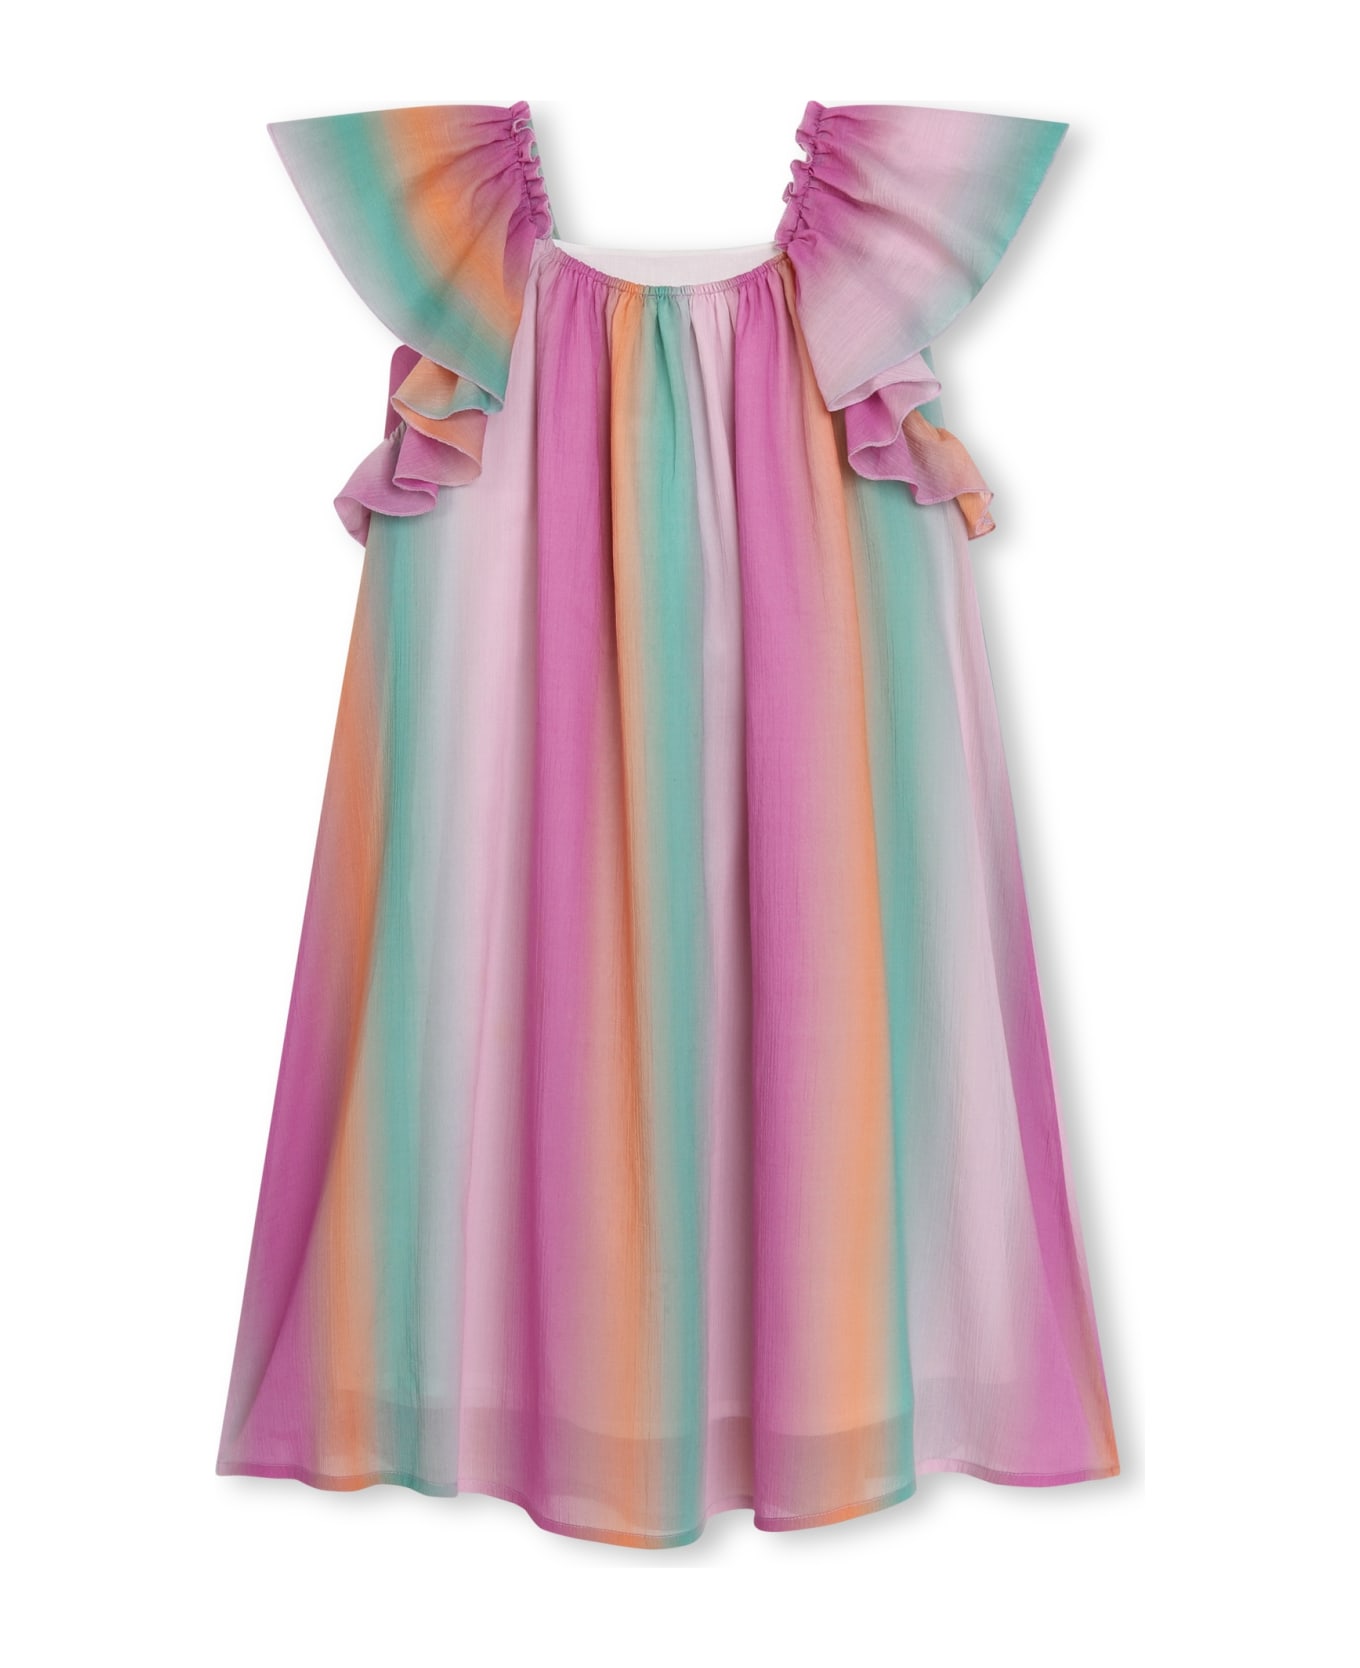 Chloé Striped Dress - Multicolor